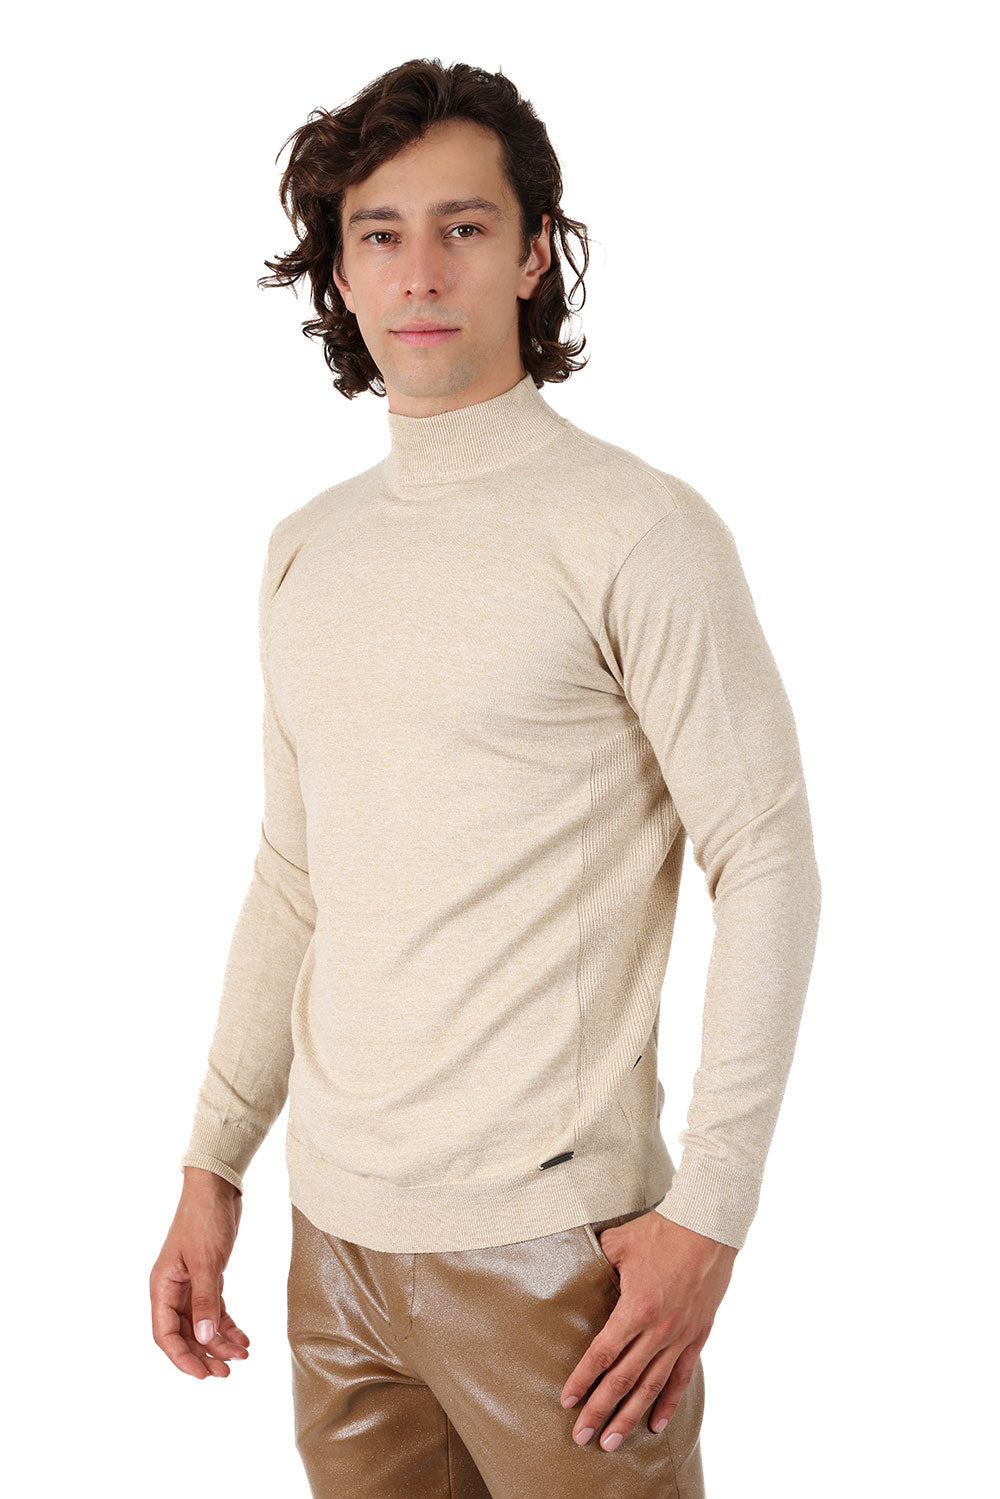 Men's Turtleneck Ribbed Solid Color Mock Turtleneck Sweater 2LS2103 Tan